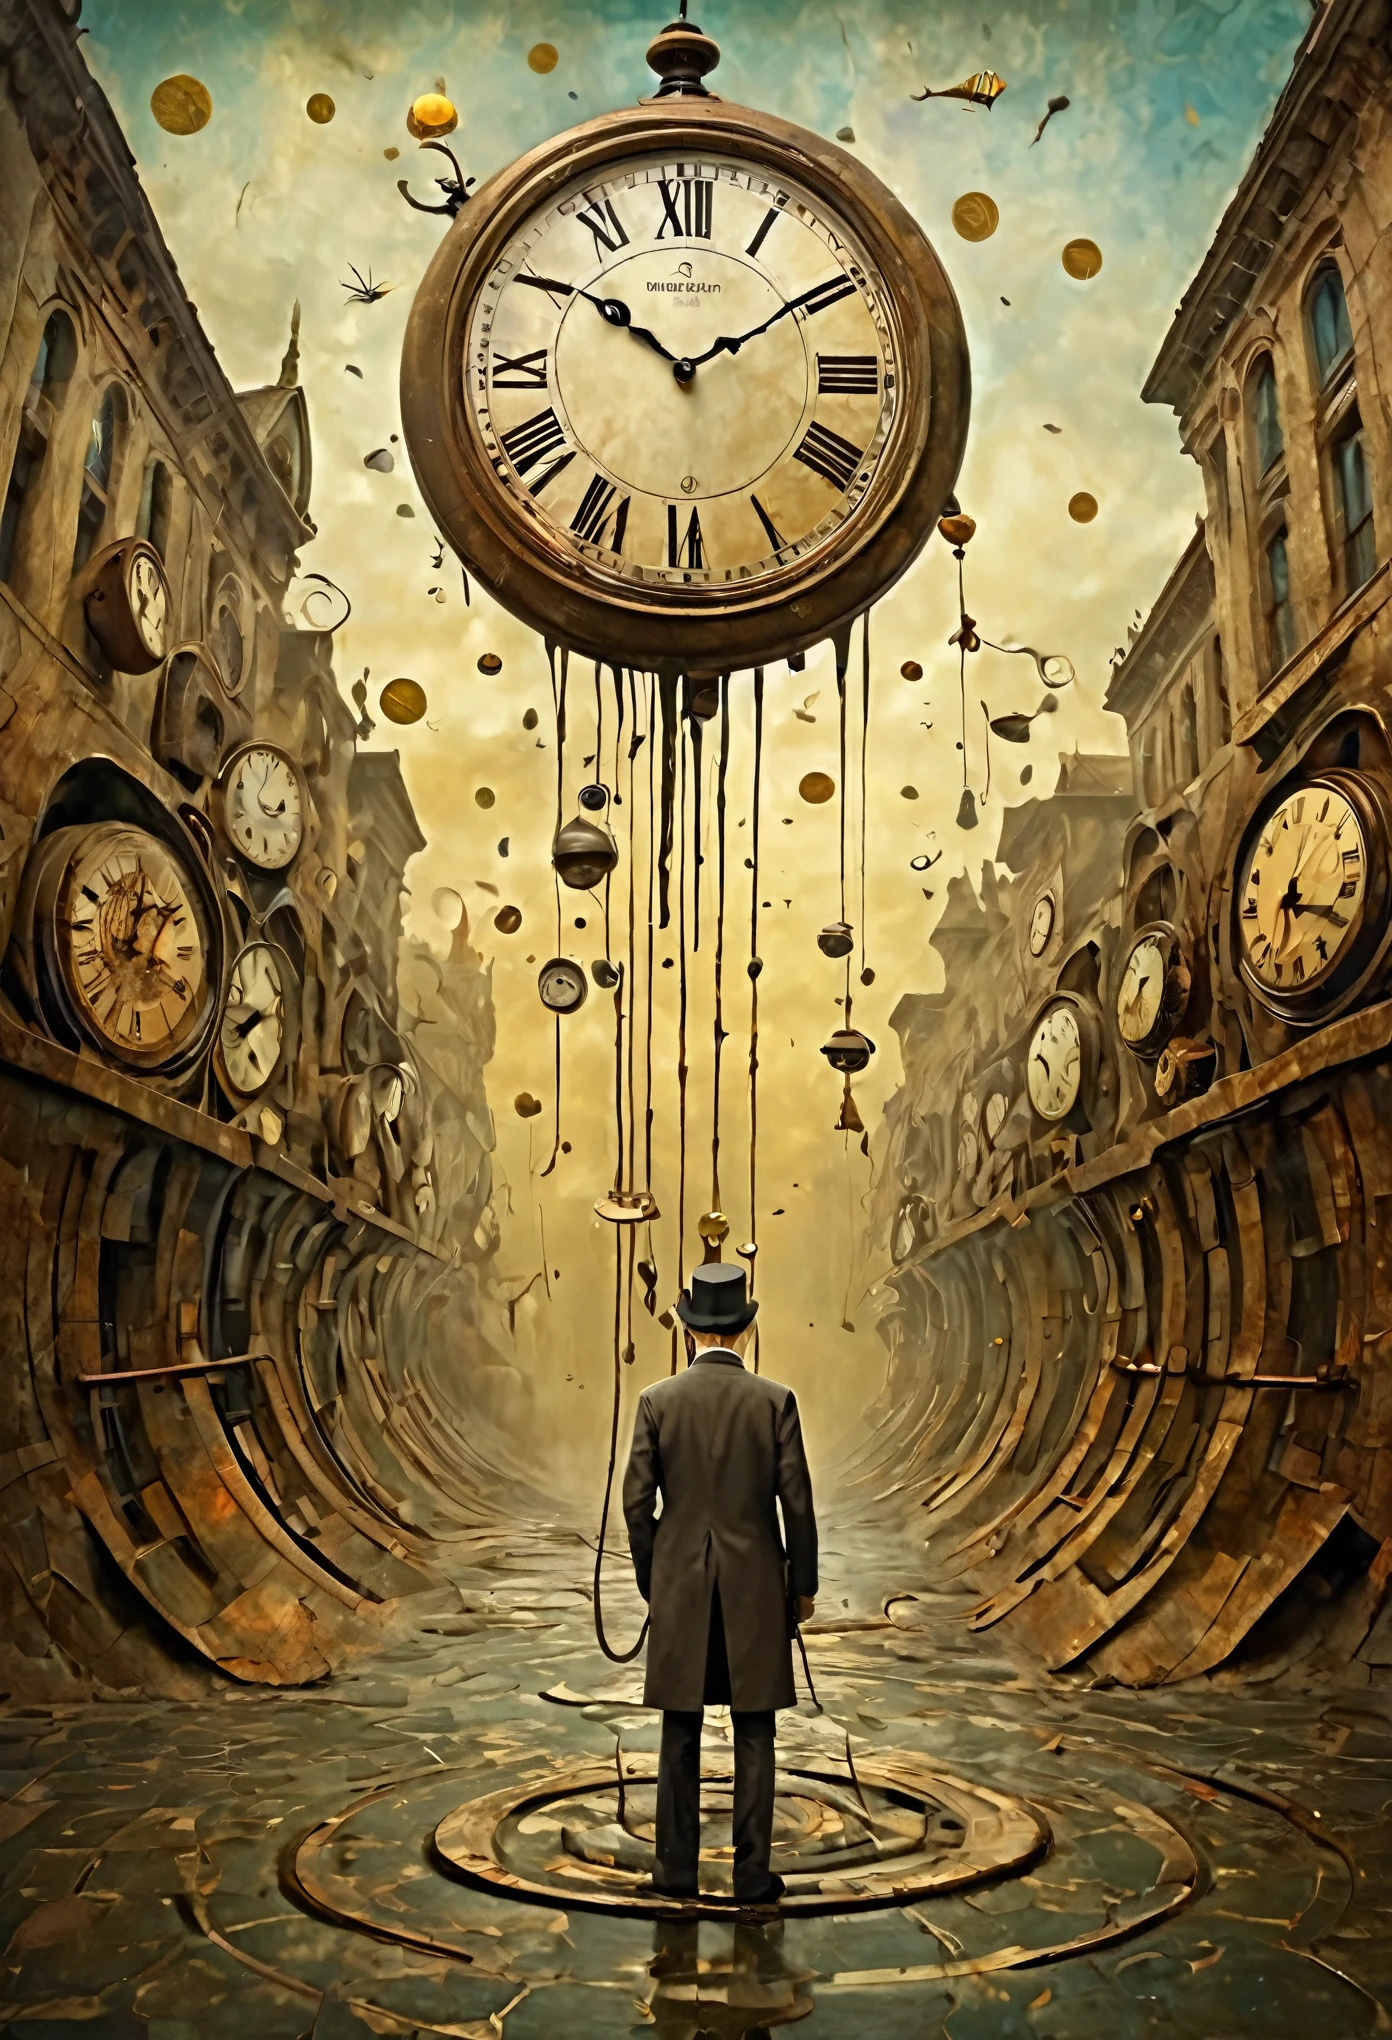 Neo Surrealism, por Gabriel Pacheco y Max Ernst, realismo mágico arte extraño, pop surrealism,una escena surrealista de relojes derritiéndose y doblándose en un percance de viaje en el tiempo, con una persona atrapada en la distorsión, arte caprichoso. 